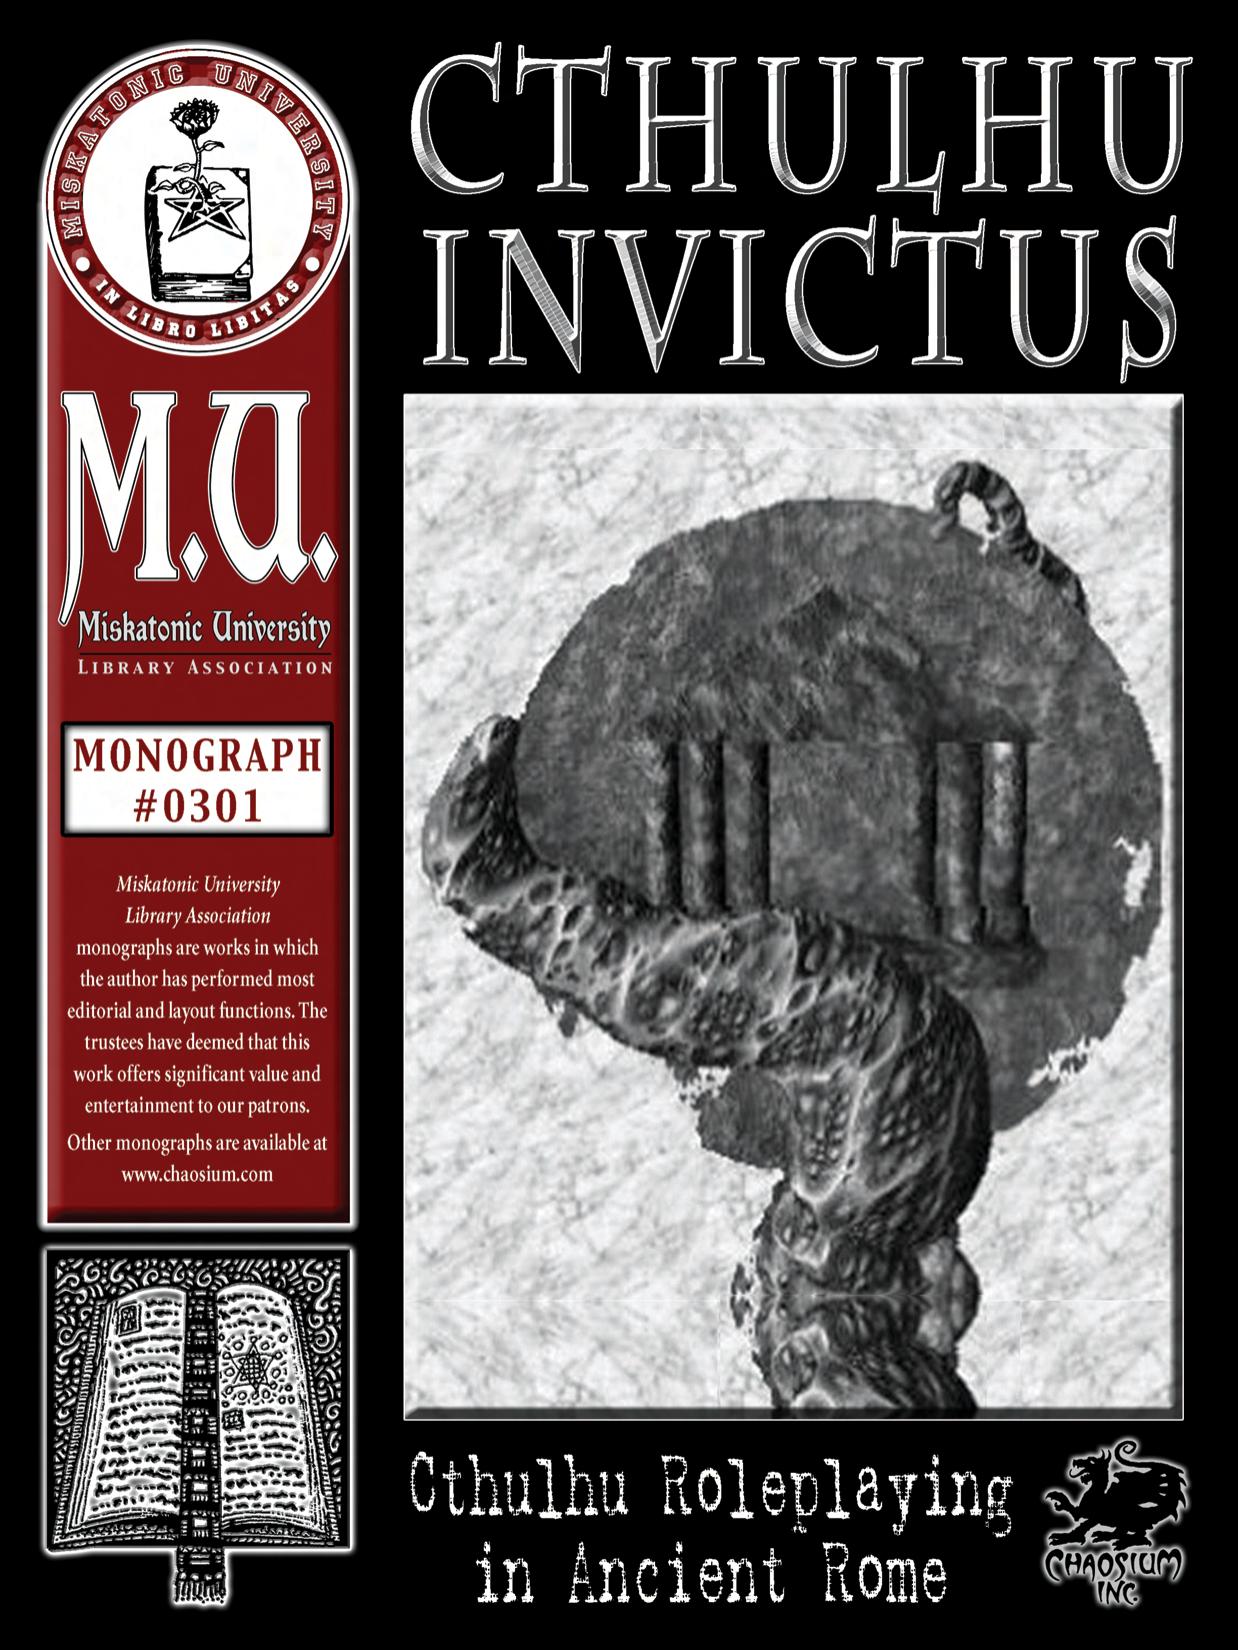 Monograph #301 - Miskatonic University - Cthulhu Invictus